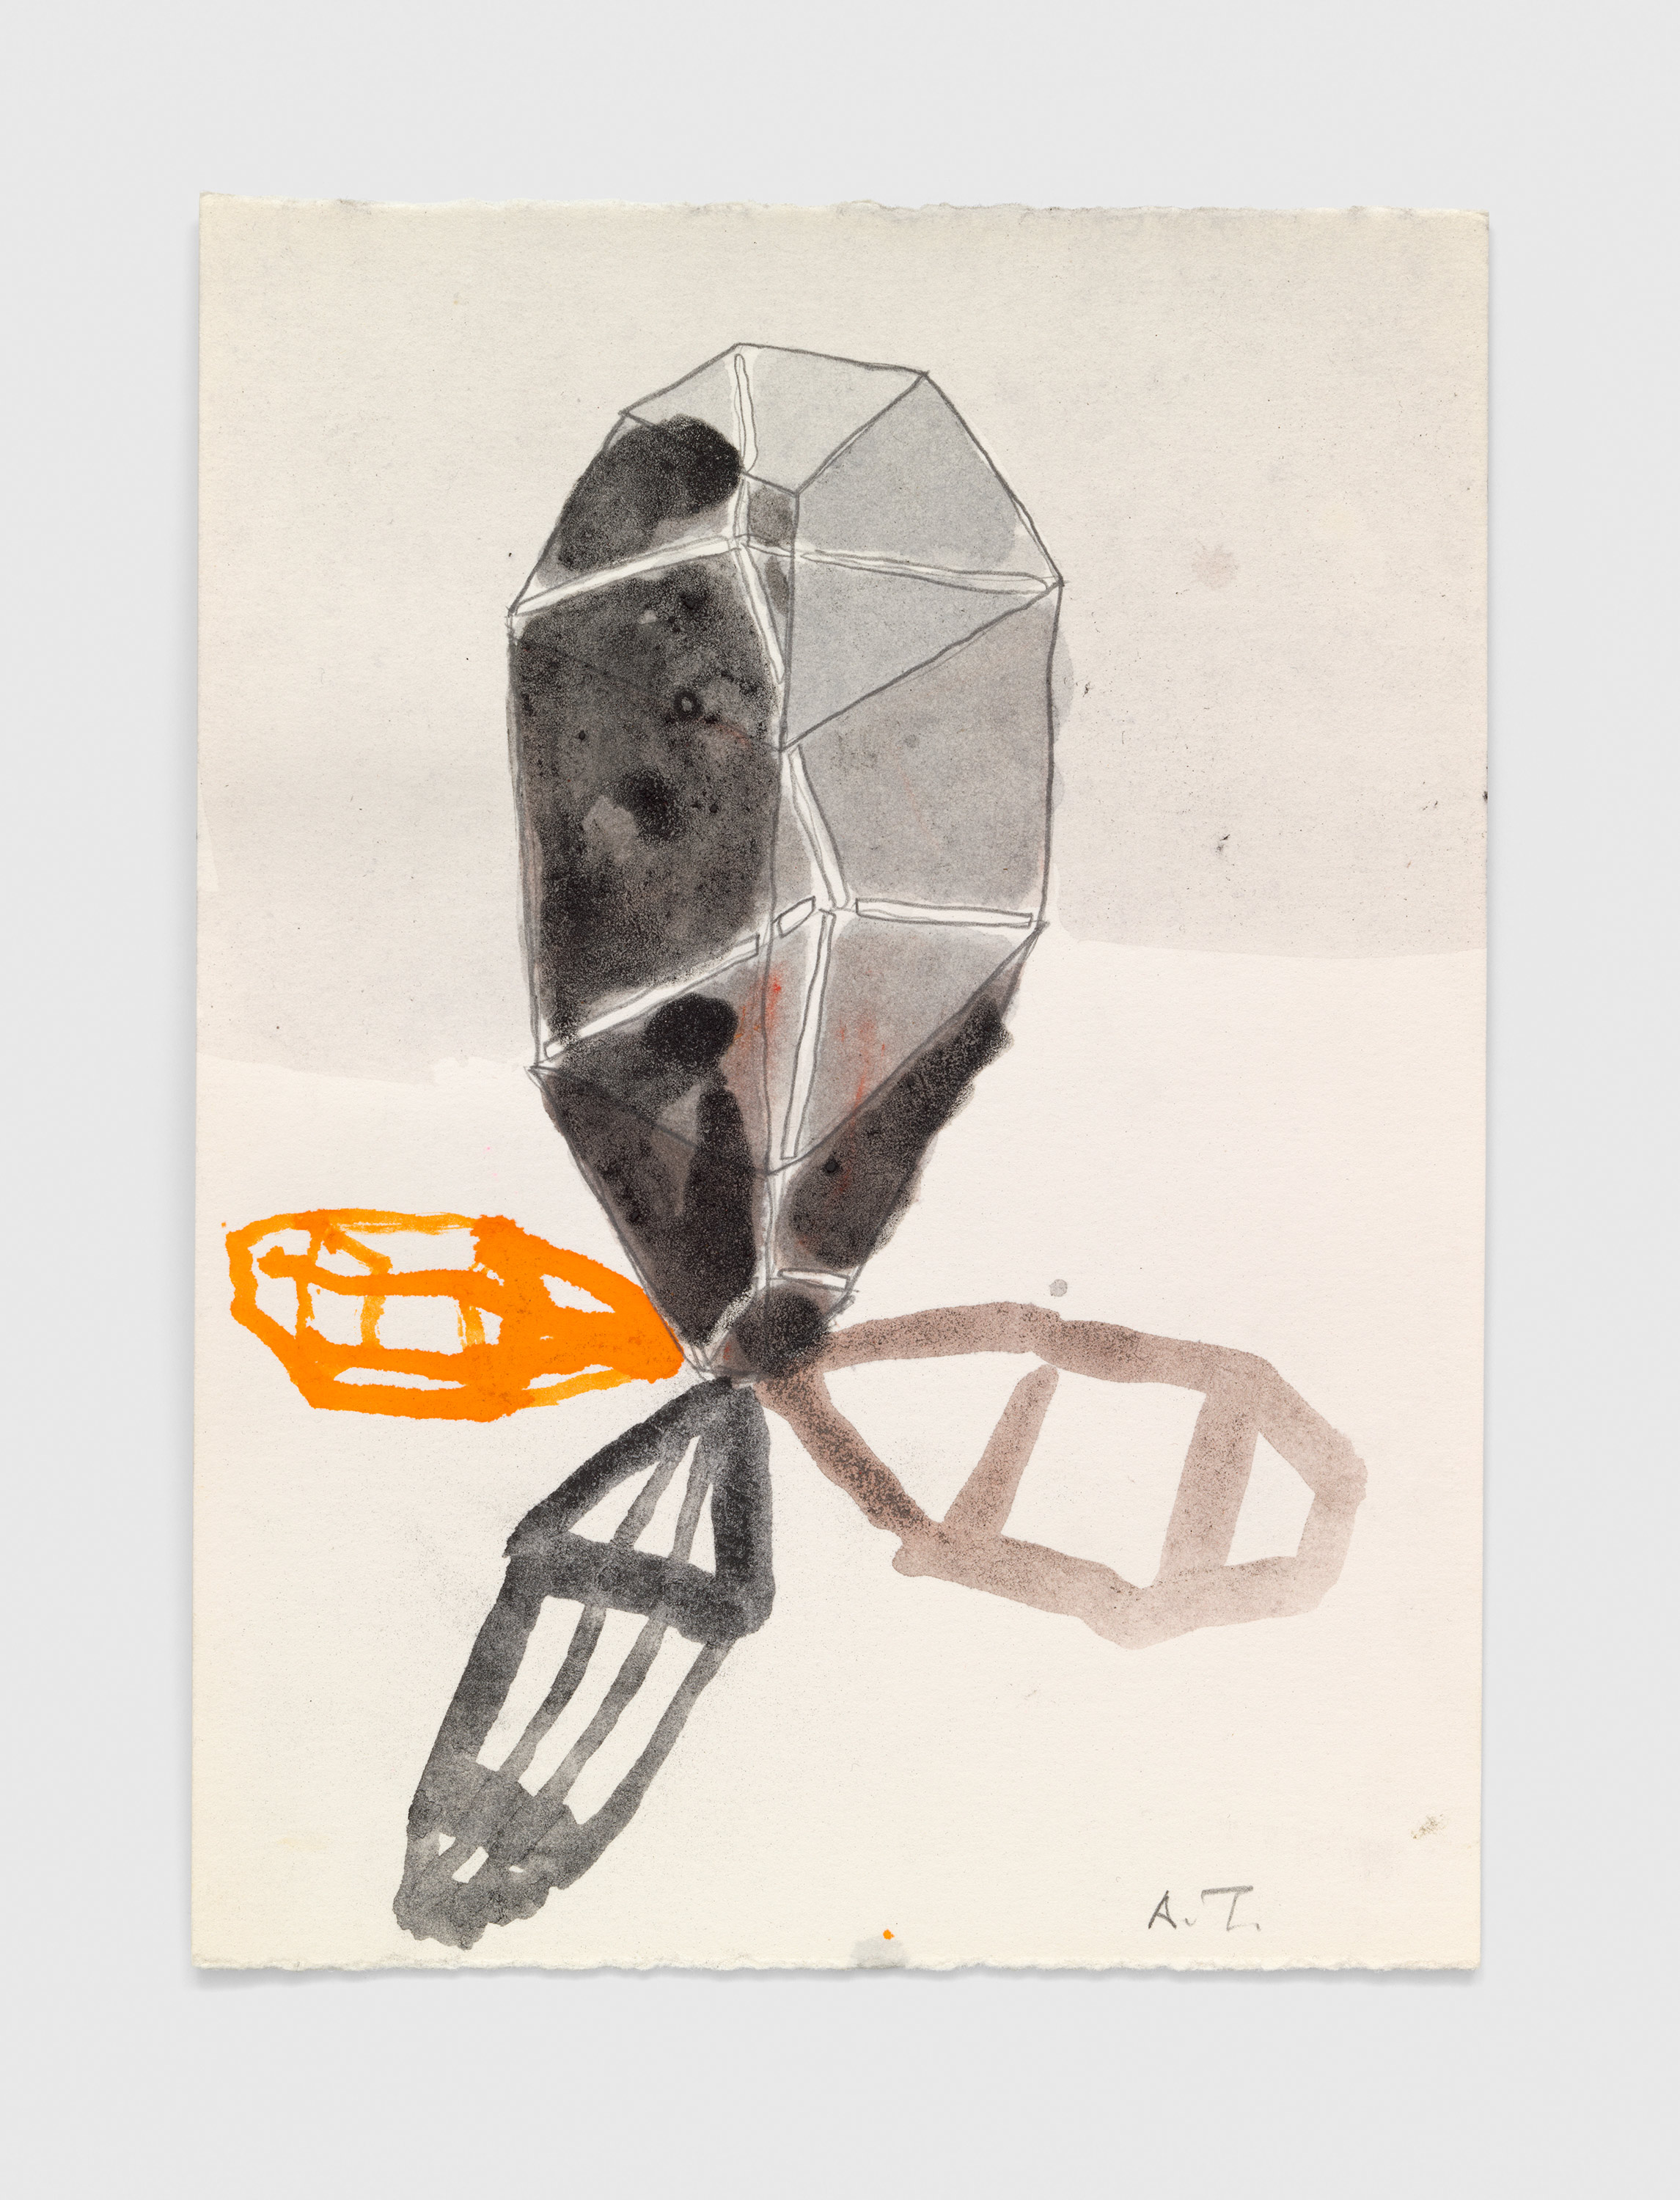 [Sin título], 1986 / 1988. Lápiz, acuarela, tinta de color y mate con pigmento seco sobre papel, 24.6 x 17.9 cm. TA029